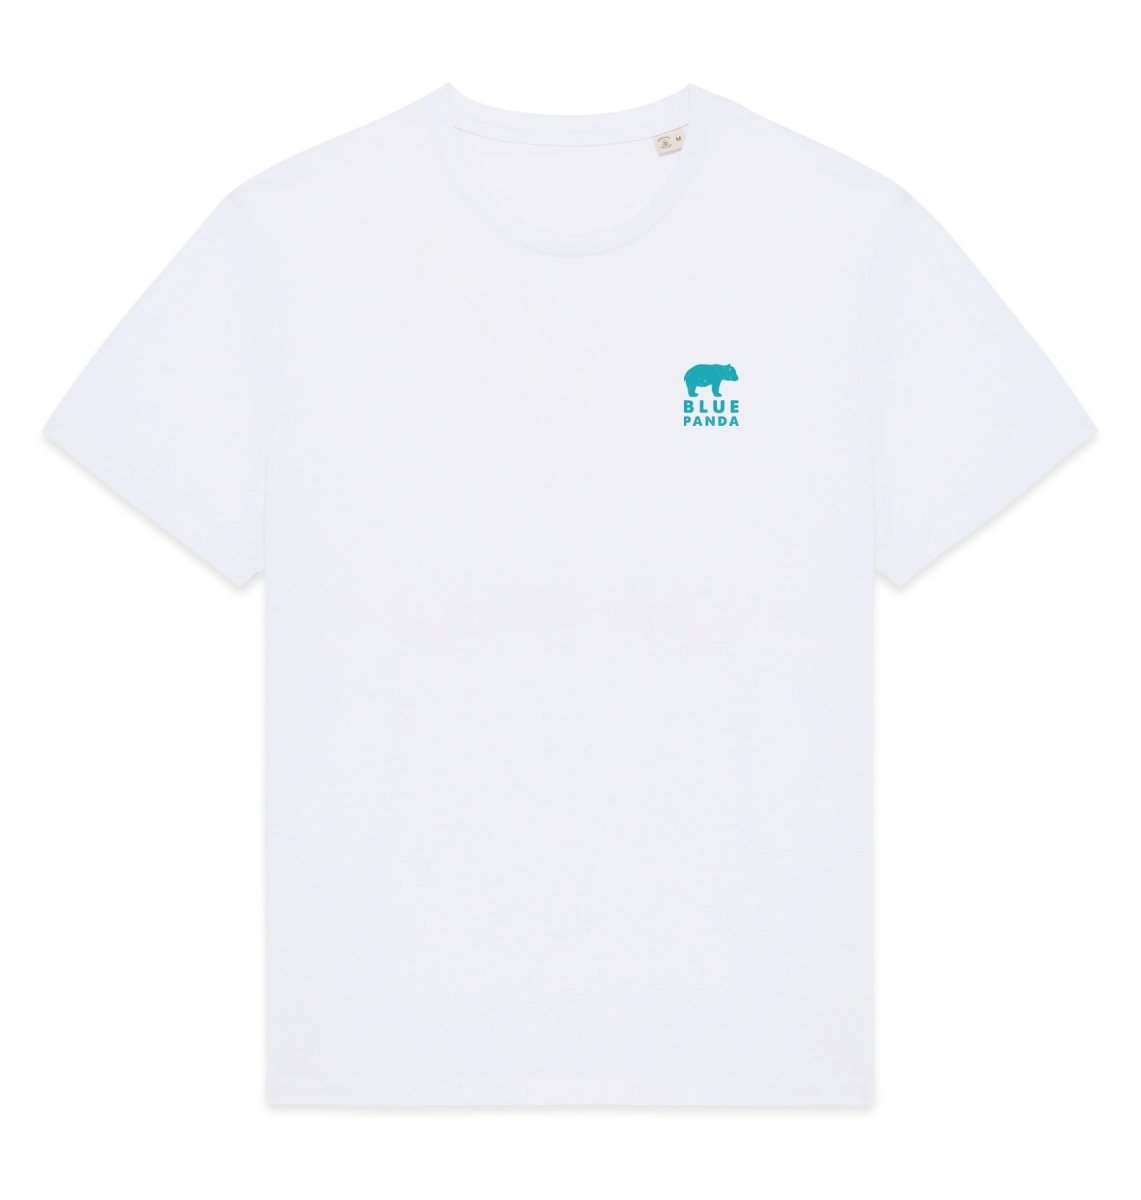 Manta Ray Mens T-shirt - Blue Panda